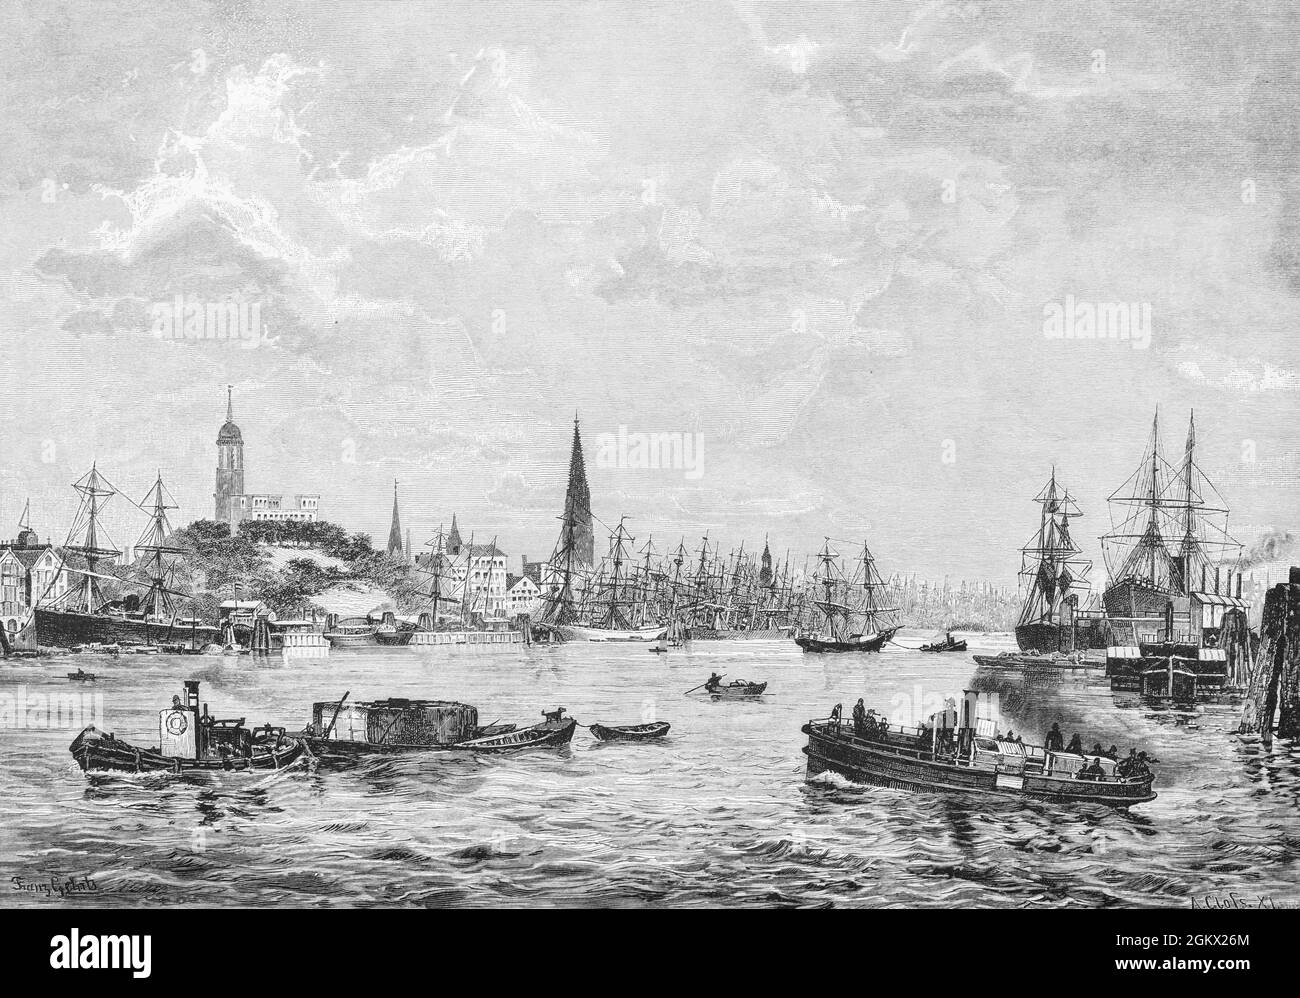 Blick auf den geschäftigen Hamburger Hafen mit seinen Schleppern und Segelschiffen, die Stadt mit der St. Michaelis Kirche und der Elbe, historische Abbildung 1880, Stockfoto